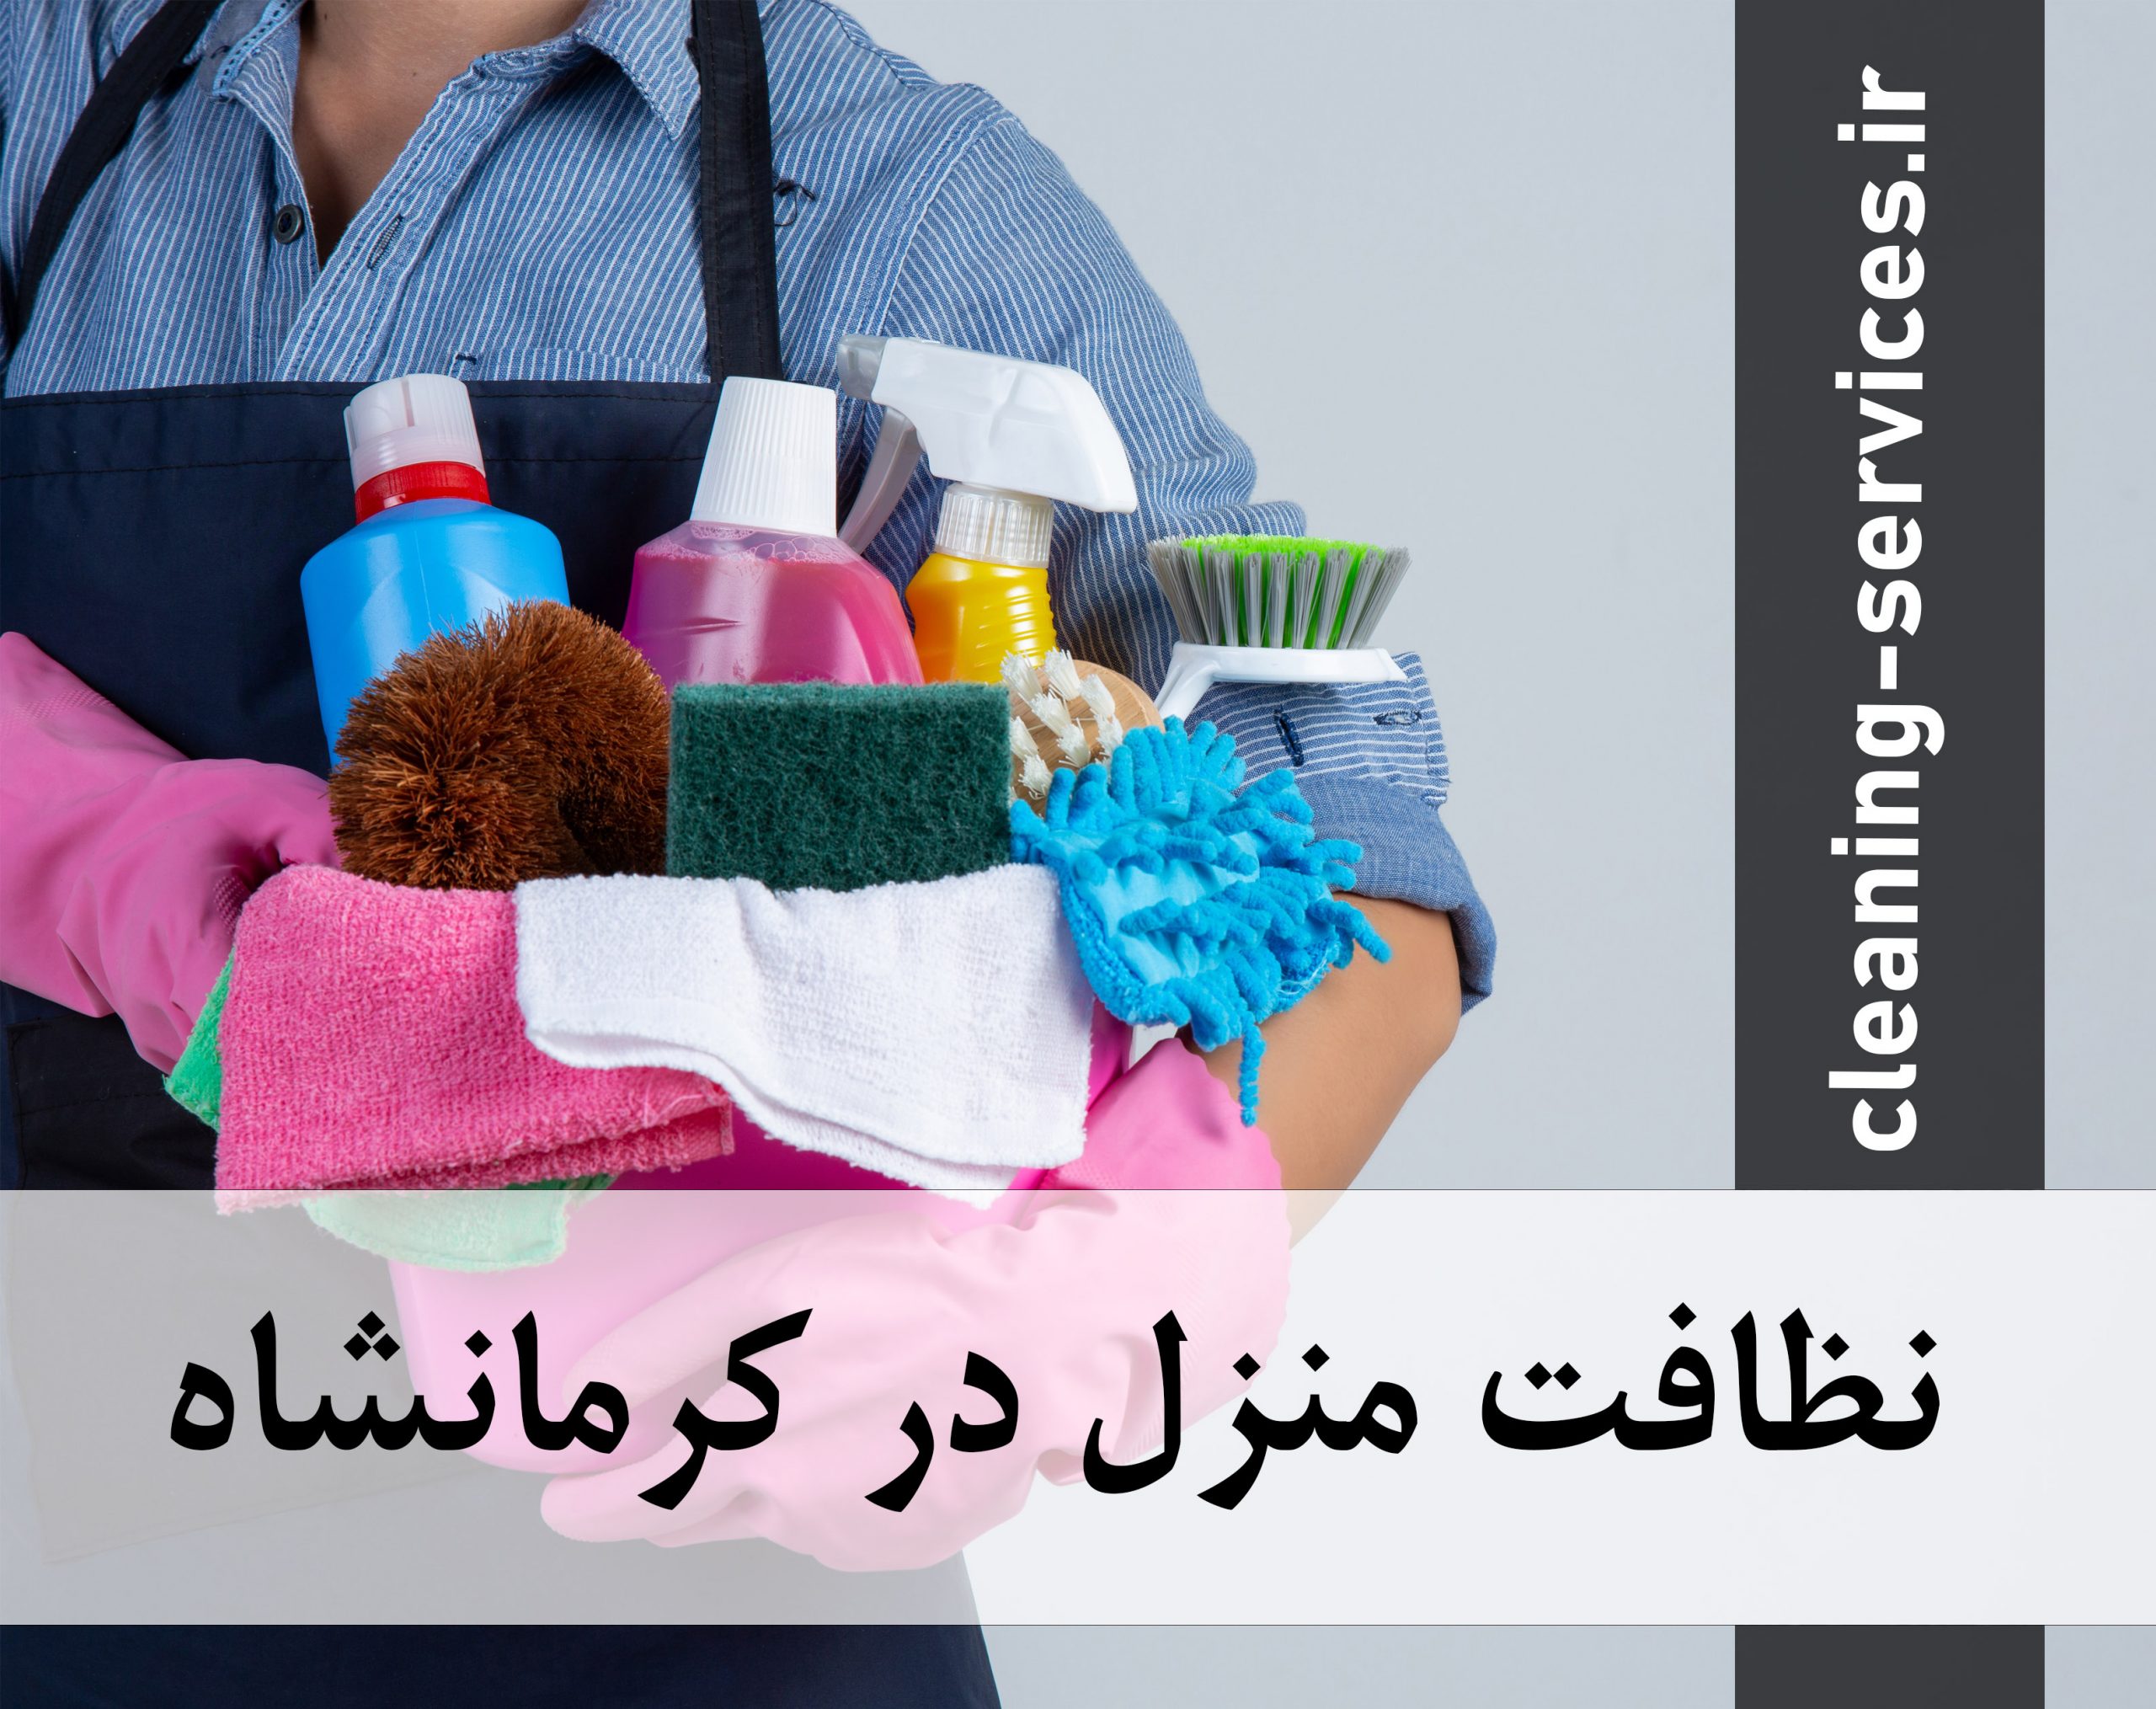 نظافت منزل در کرمانشاه